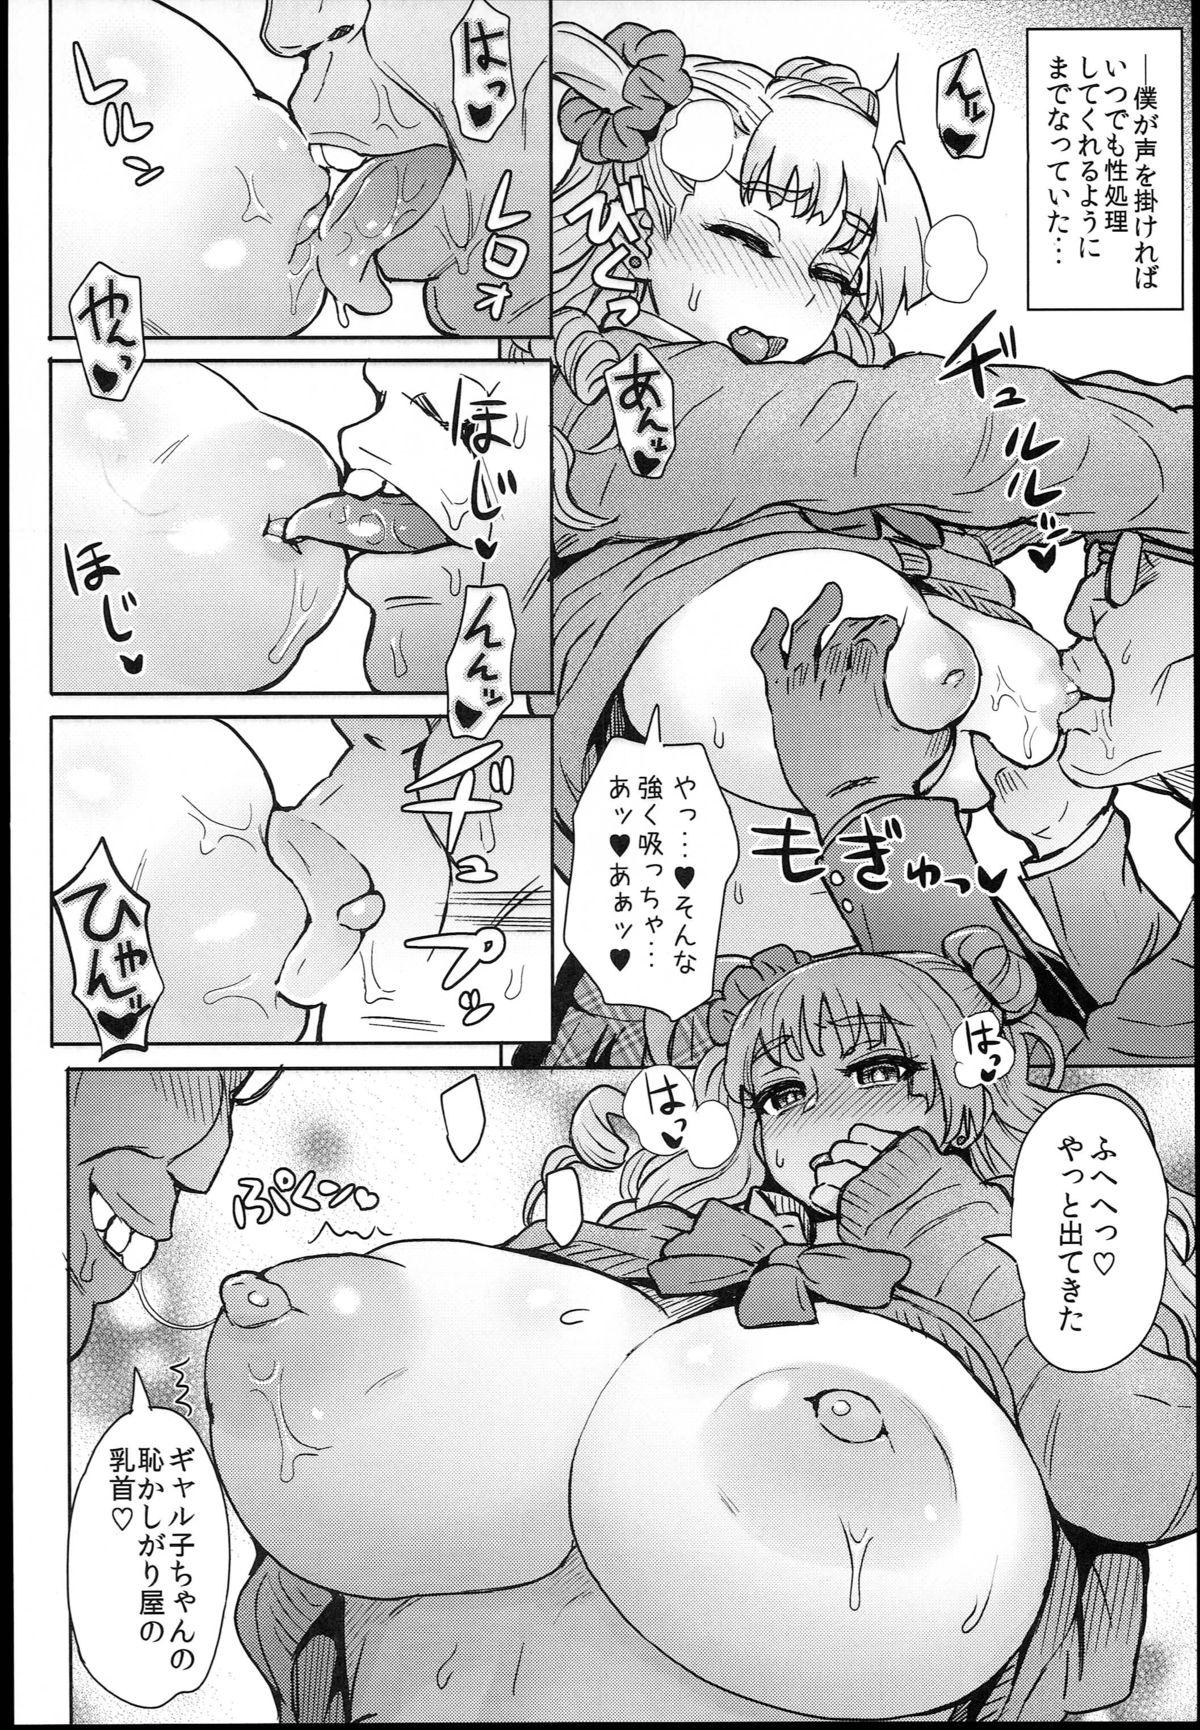 Her Oshierarenai!? Galko-chan - Oshiete galko-chan Kinky - Page 6